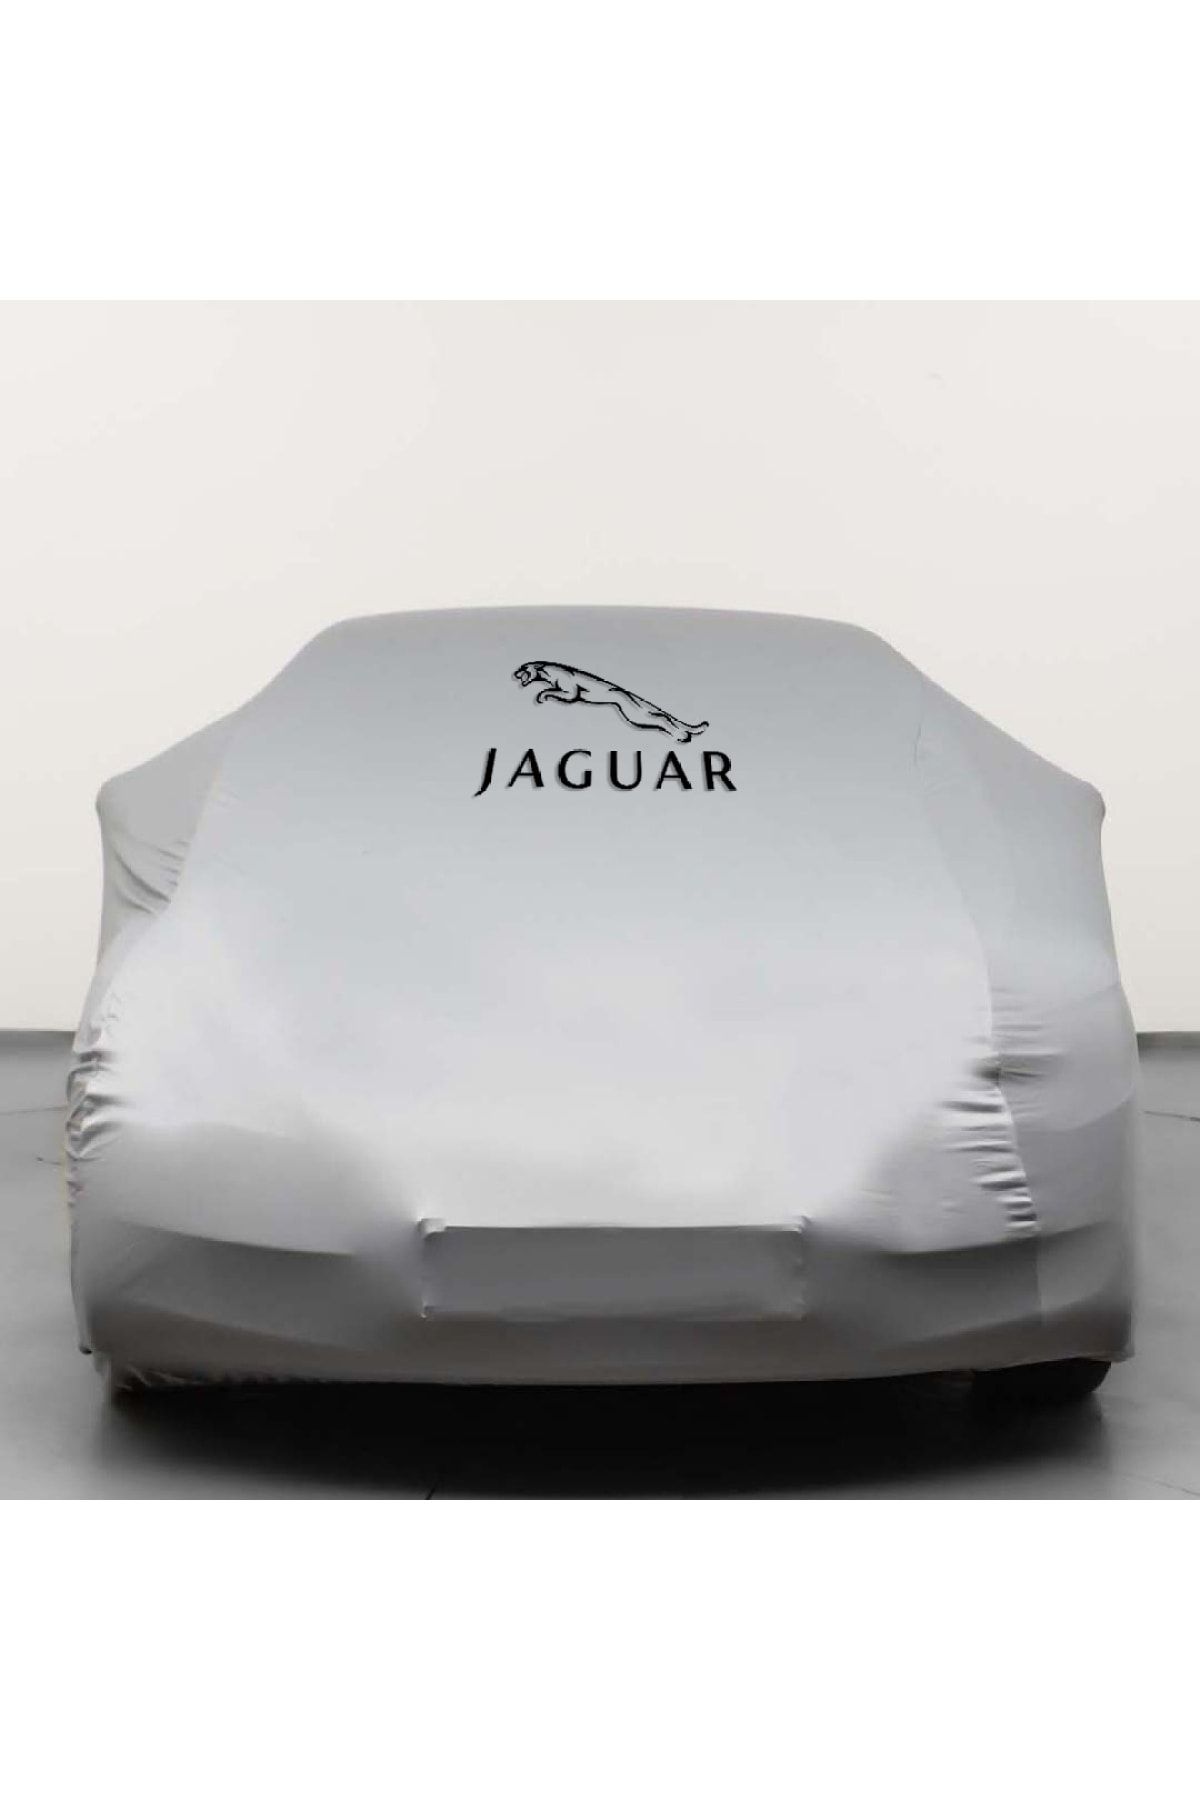 Teksin Jaguar F-type Gray Automobile Fabric Combed Cotton Car